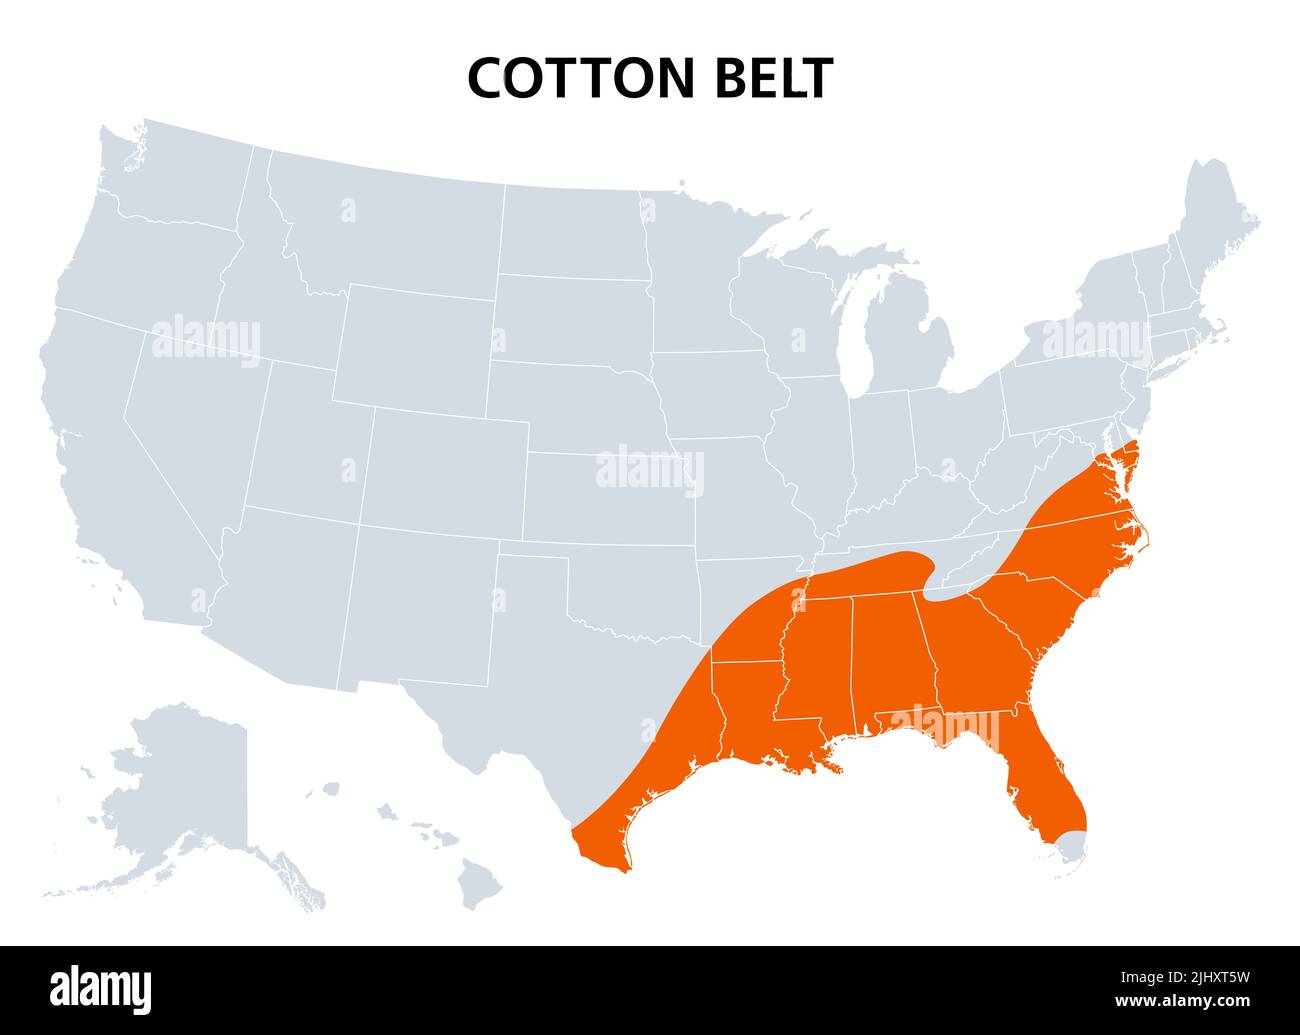 Cintura di cotone degli Stati Uniti, mappa politica. Regione del sud americano, dal Delaware al Texas orientale, dove il cotone era il raccolto di cassa predominante. Foto Stock